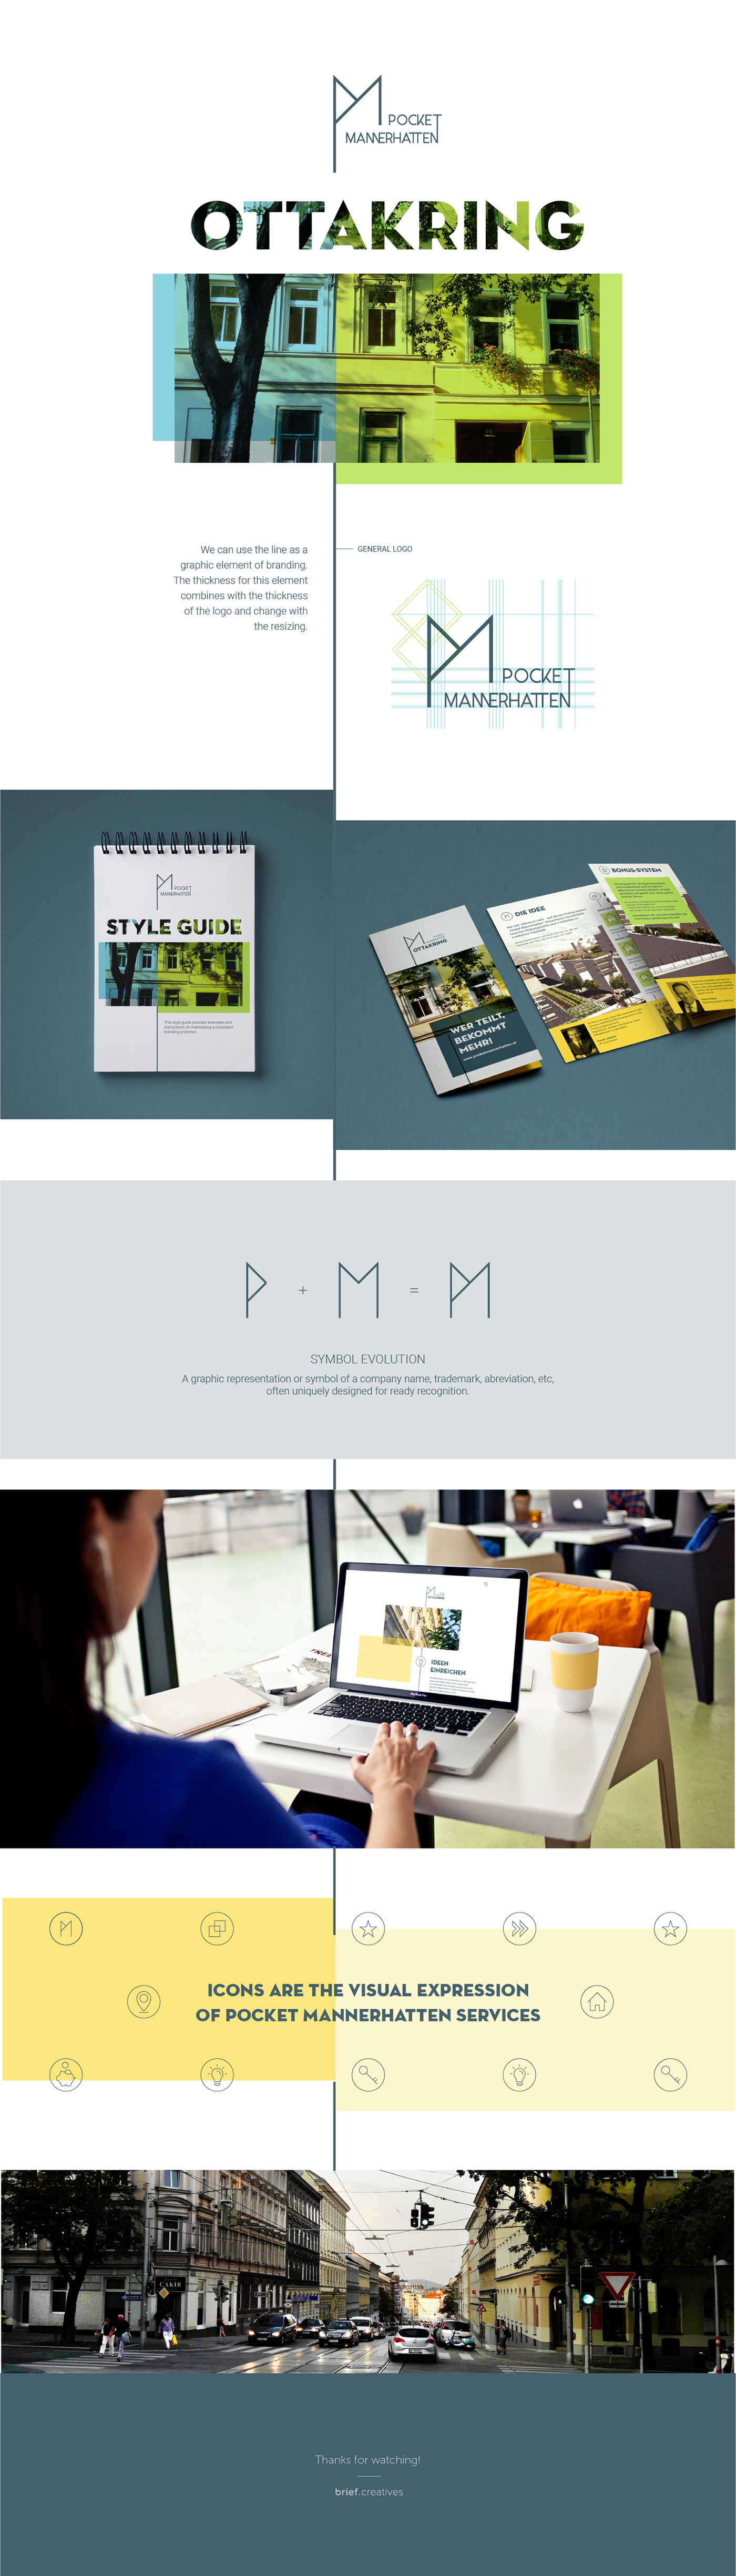 flyer Website Responsive design Webdesign Grphic Design vienna austria branding  logo